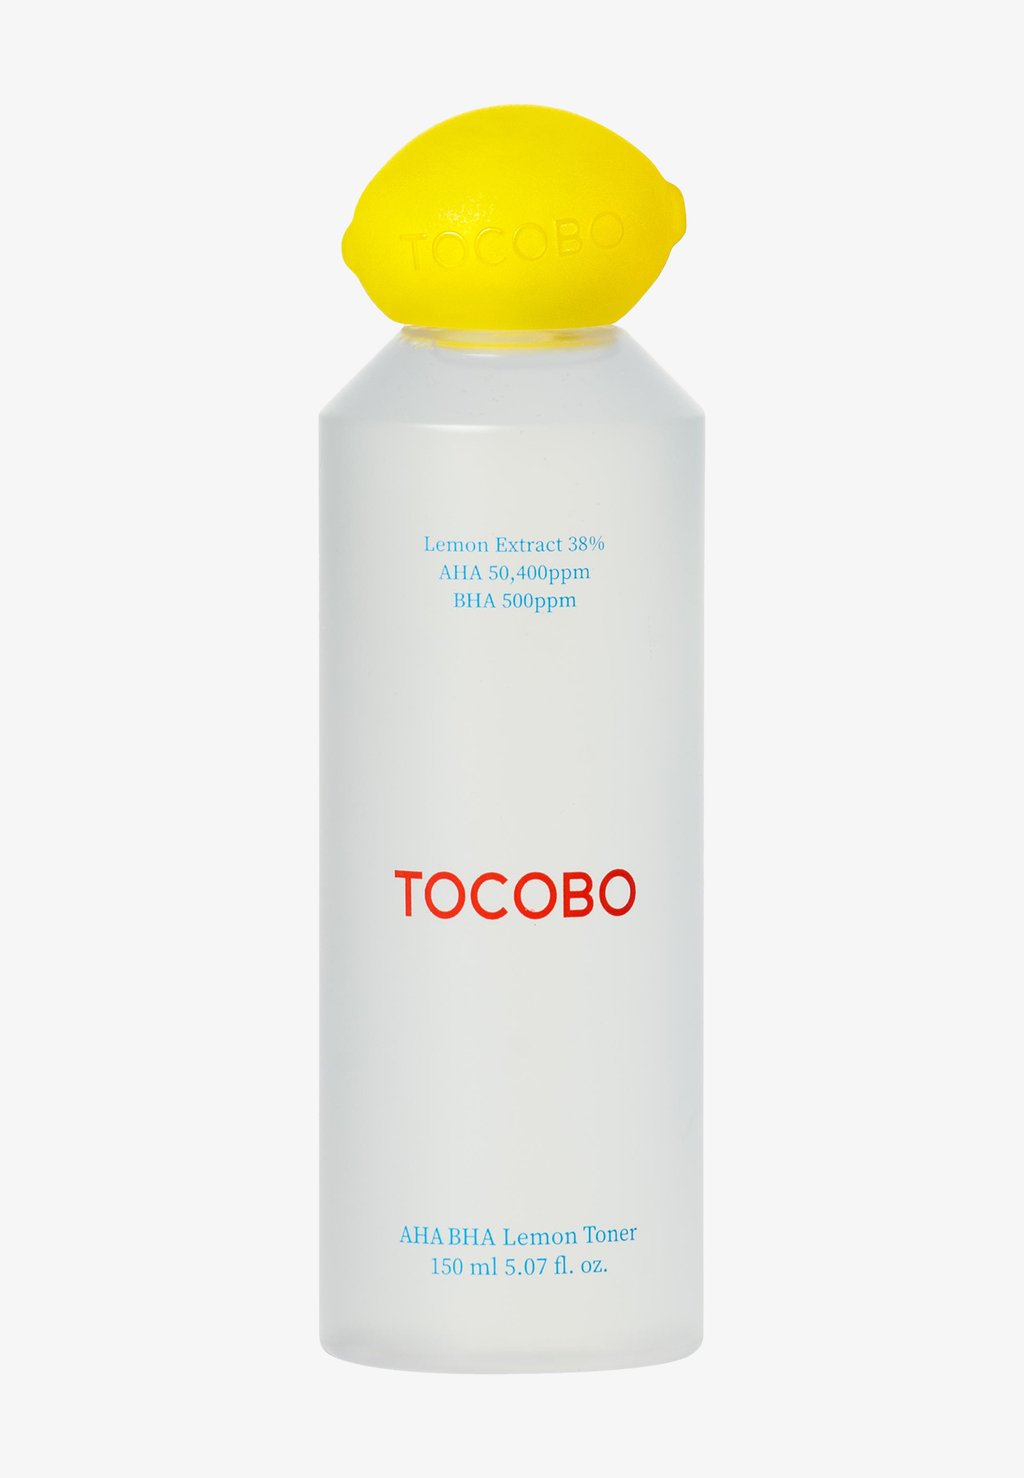 Очищающее средство Aha Bha Lemon Toner tocobo